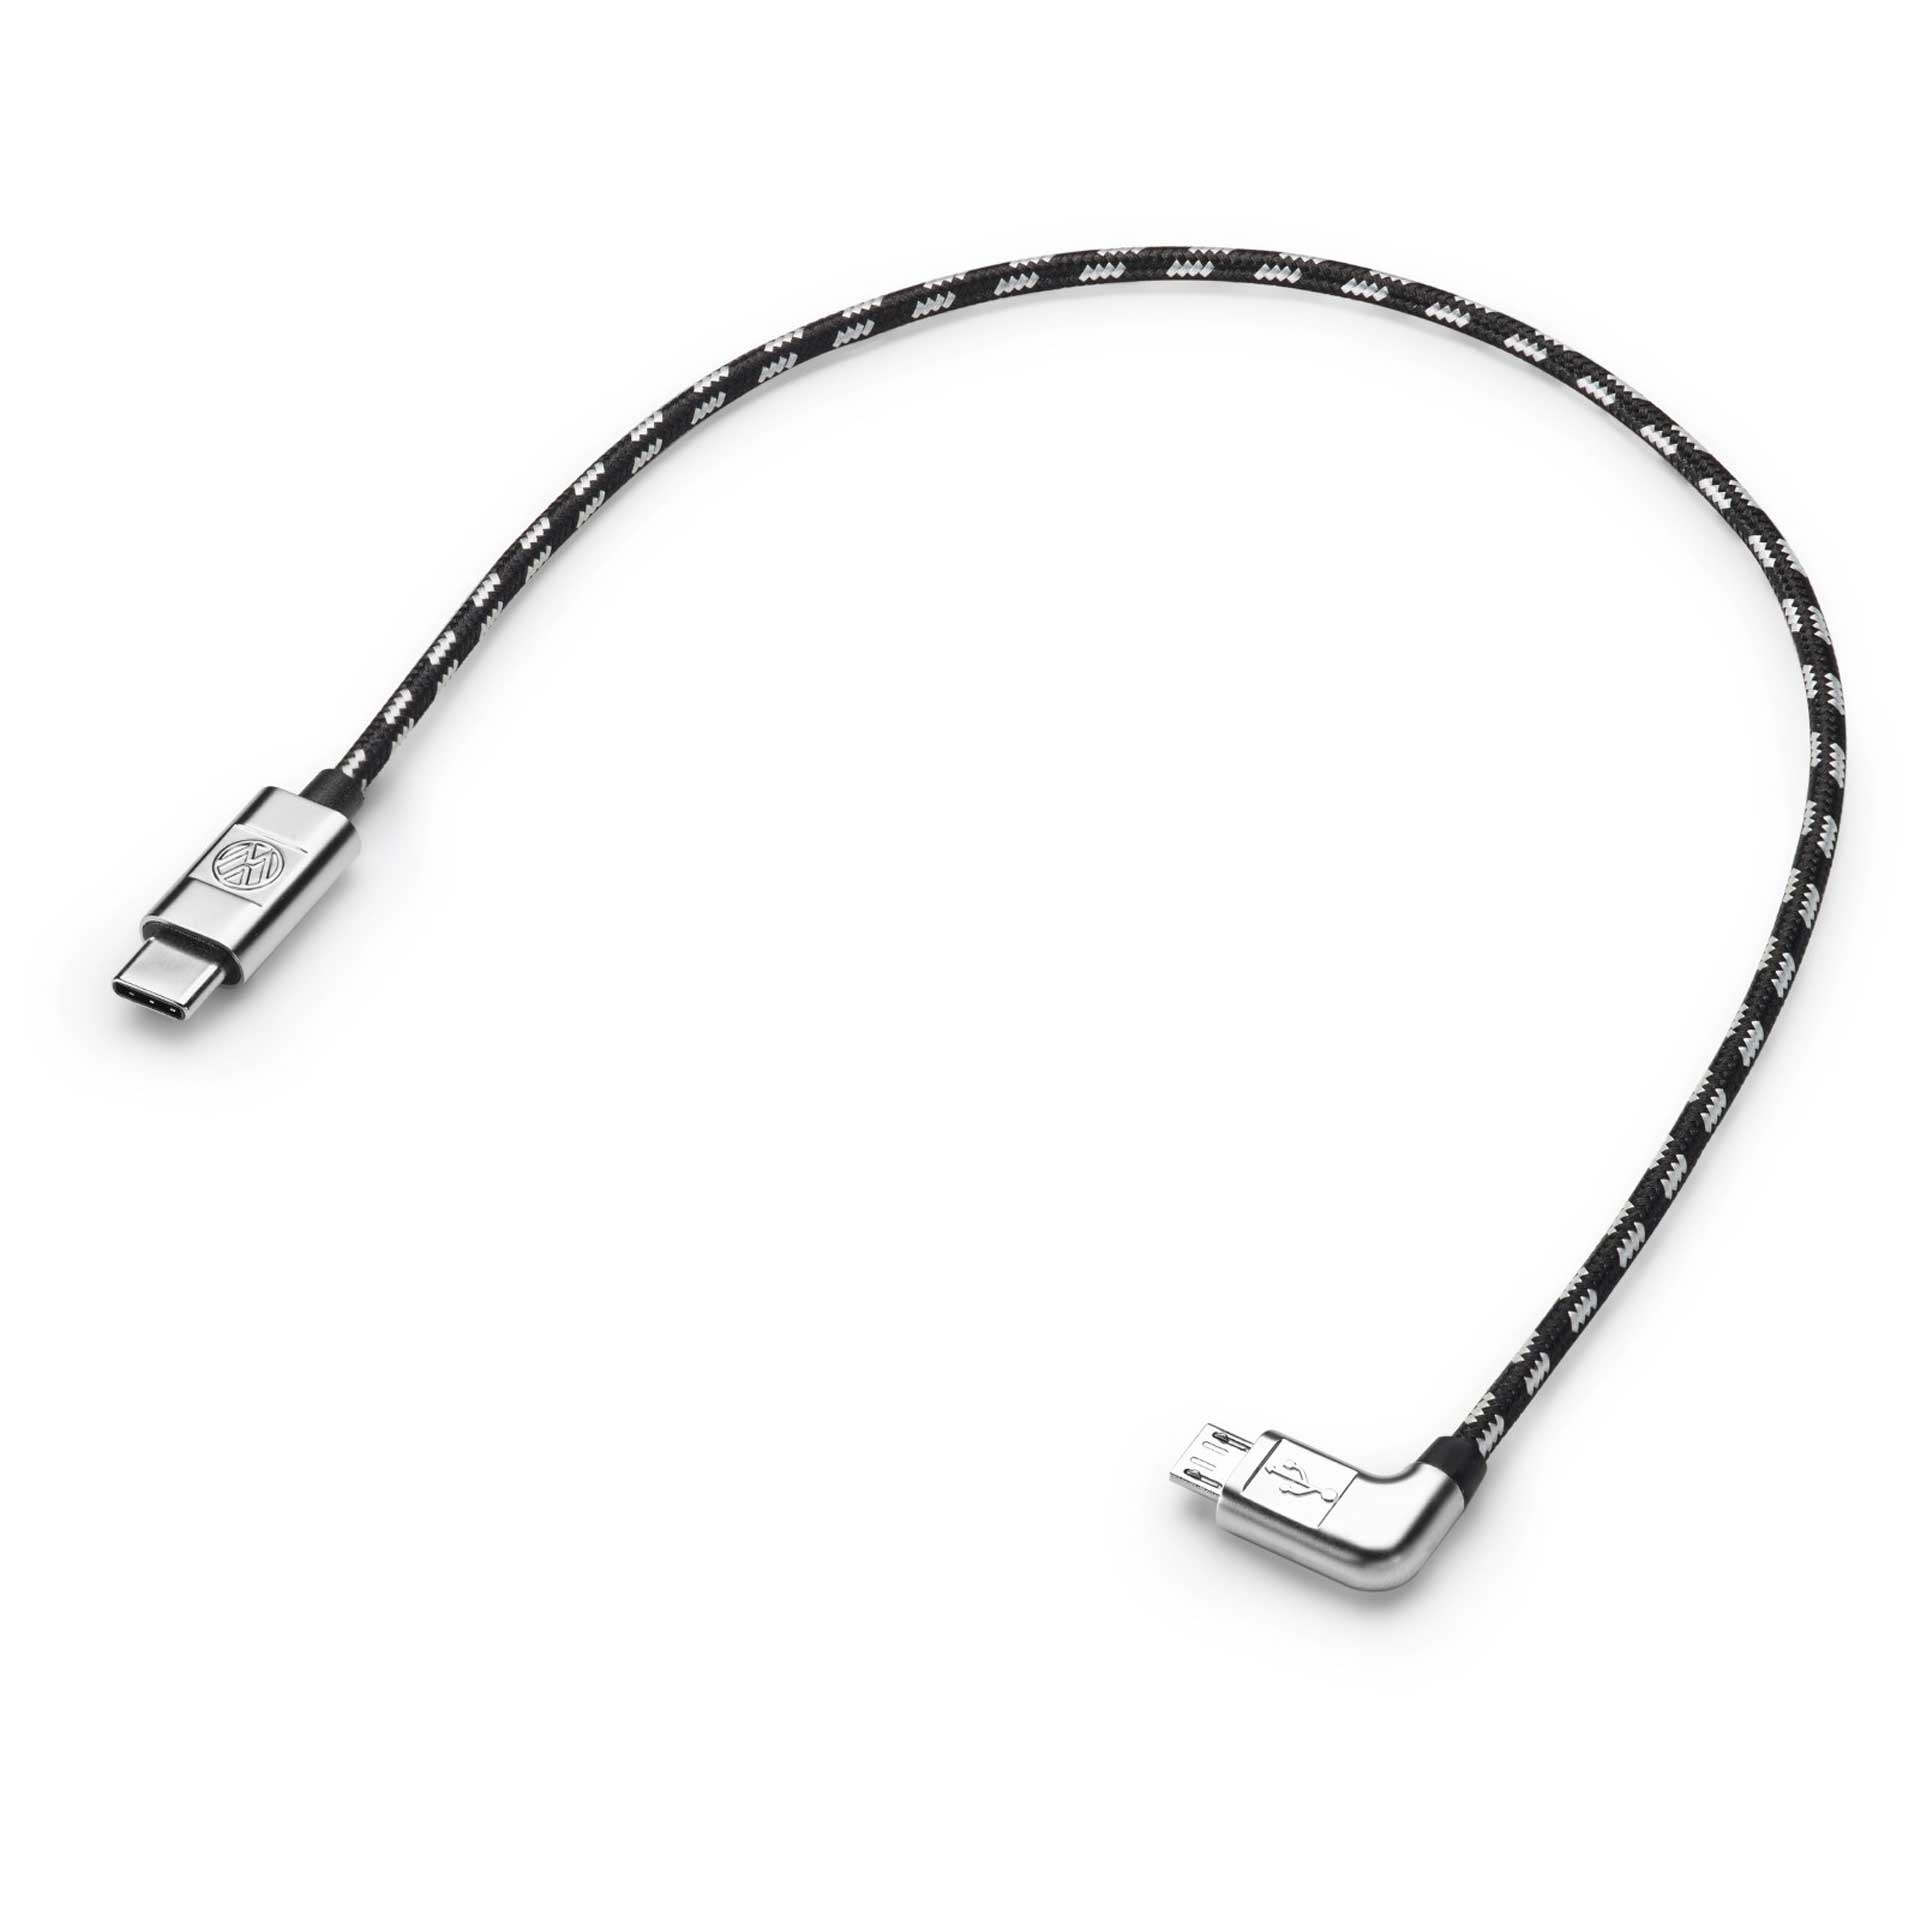 Volkswagen Anschlusskabel Ladekabel USB-C auf Micro-USB 30 cm